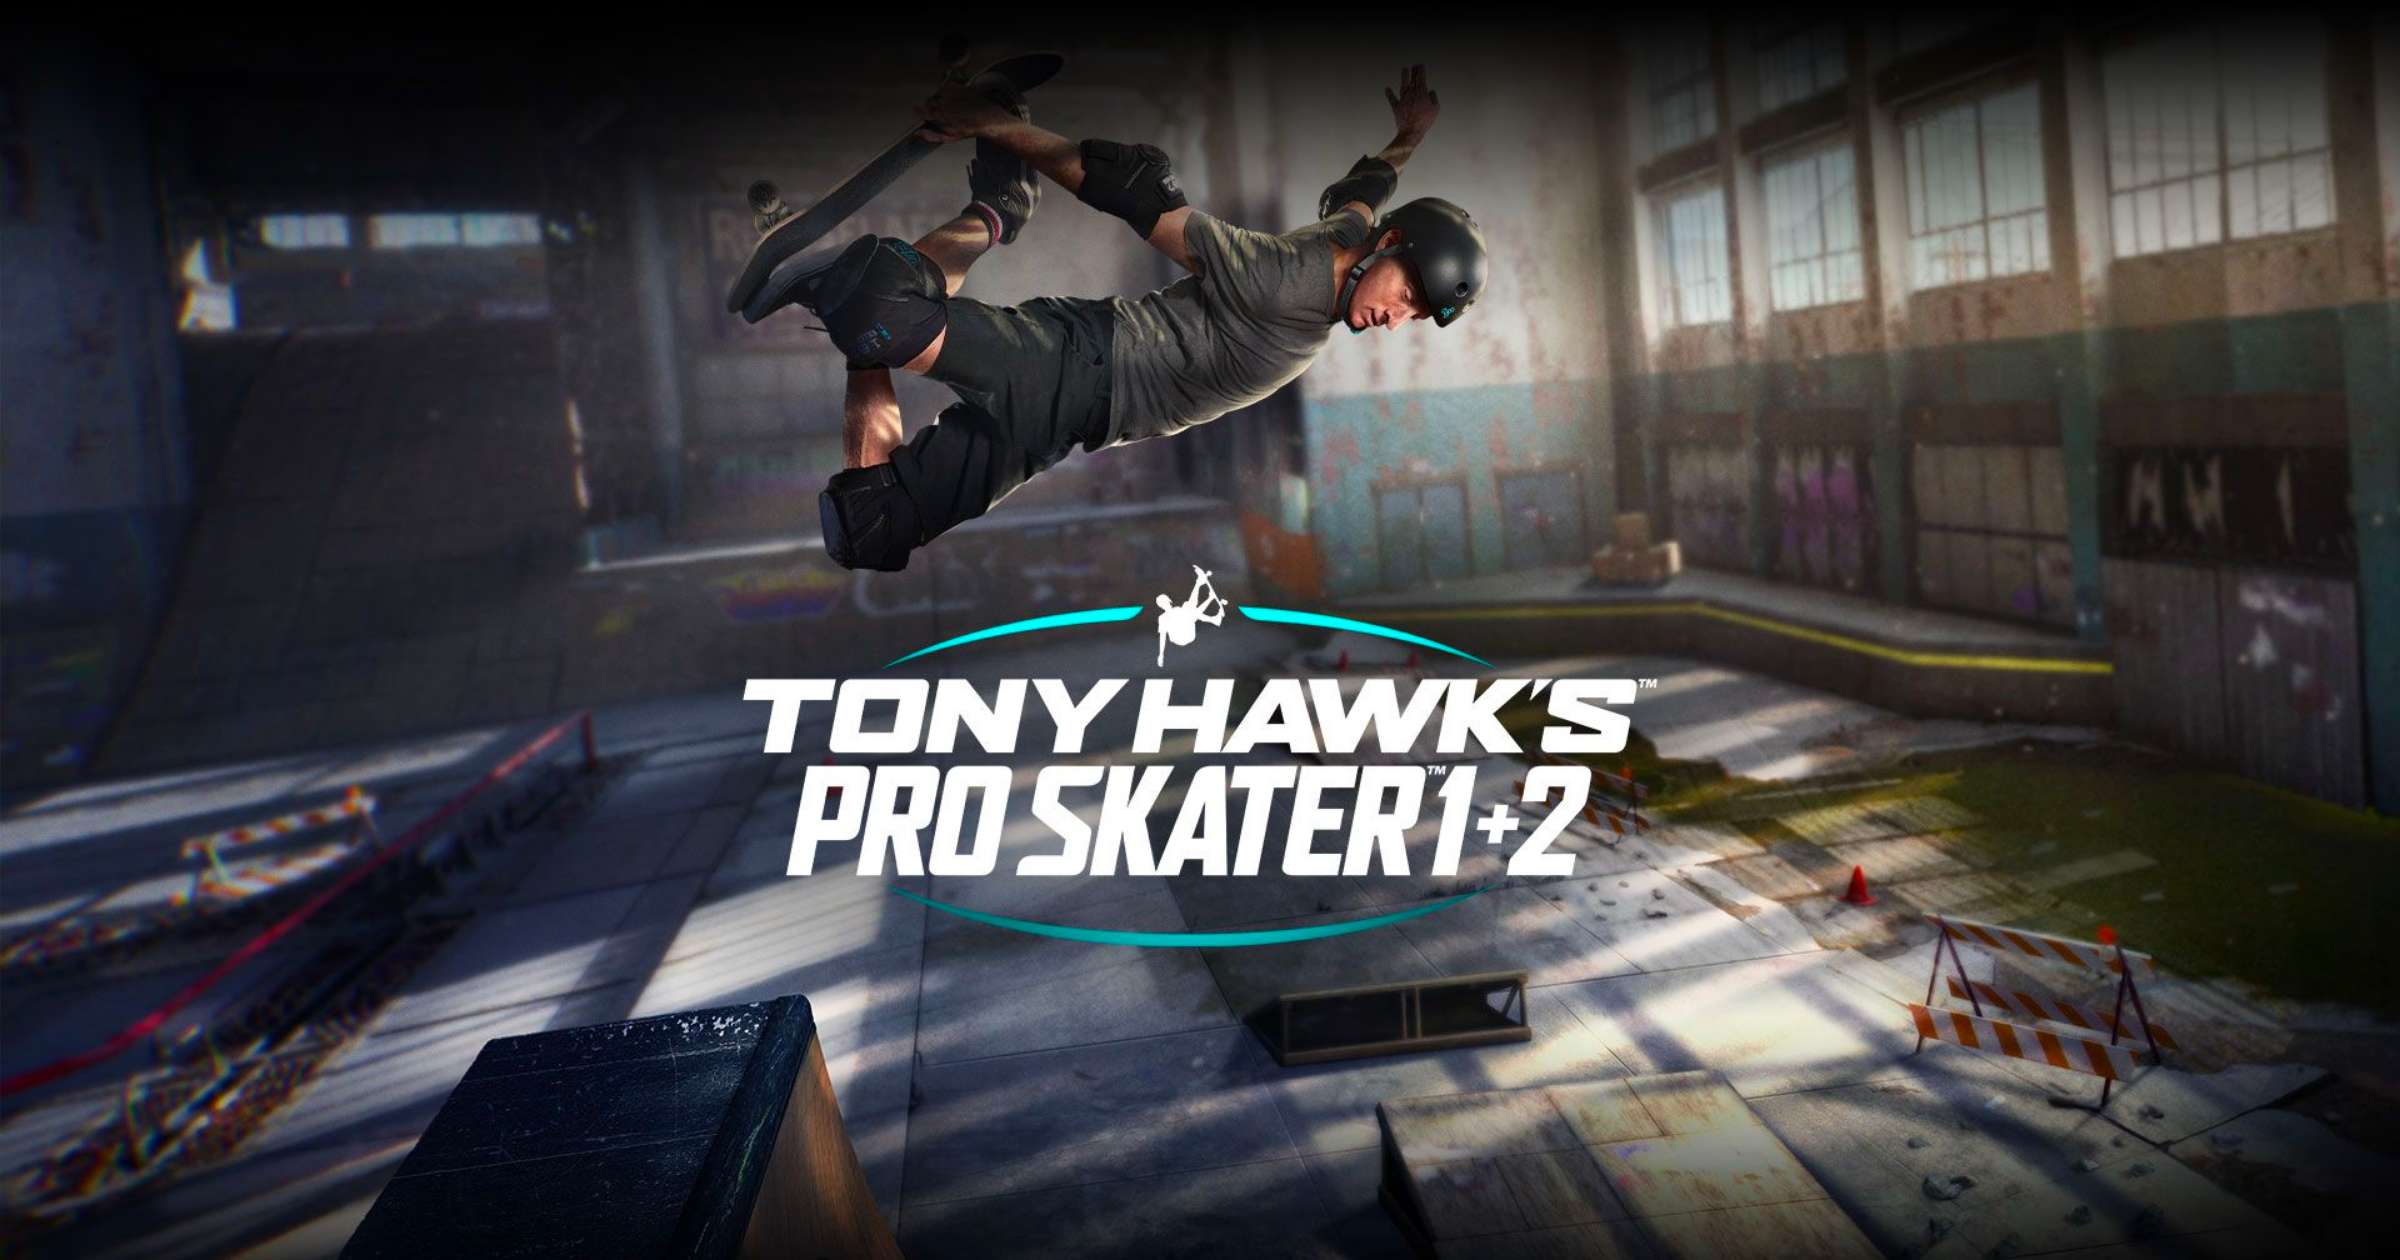 Tony Hawk Pro Skater 1 & 2